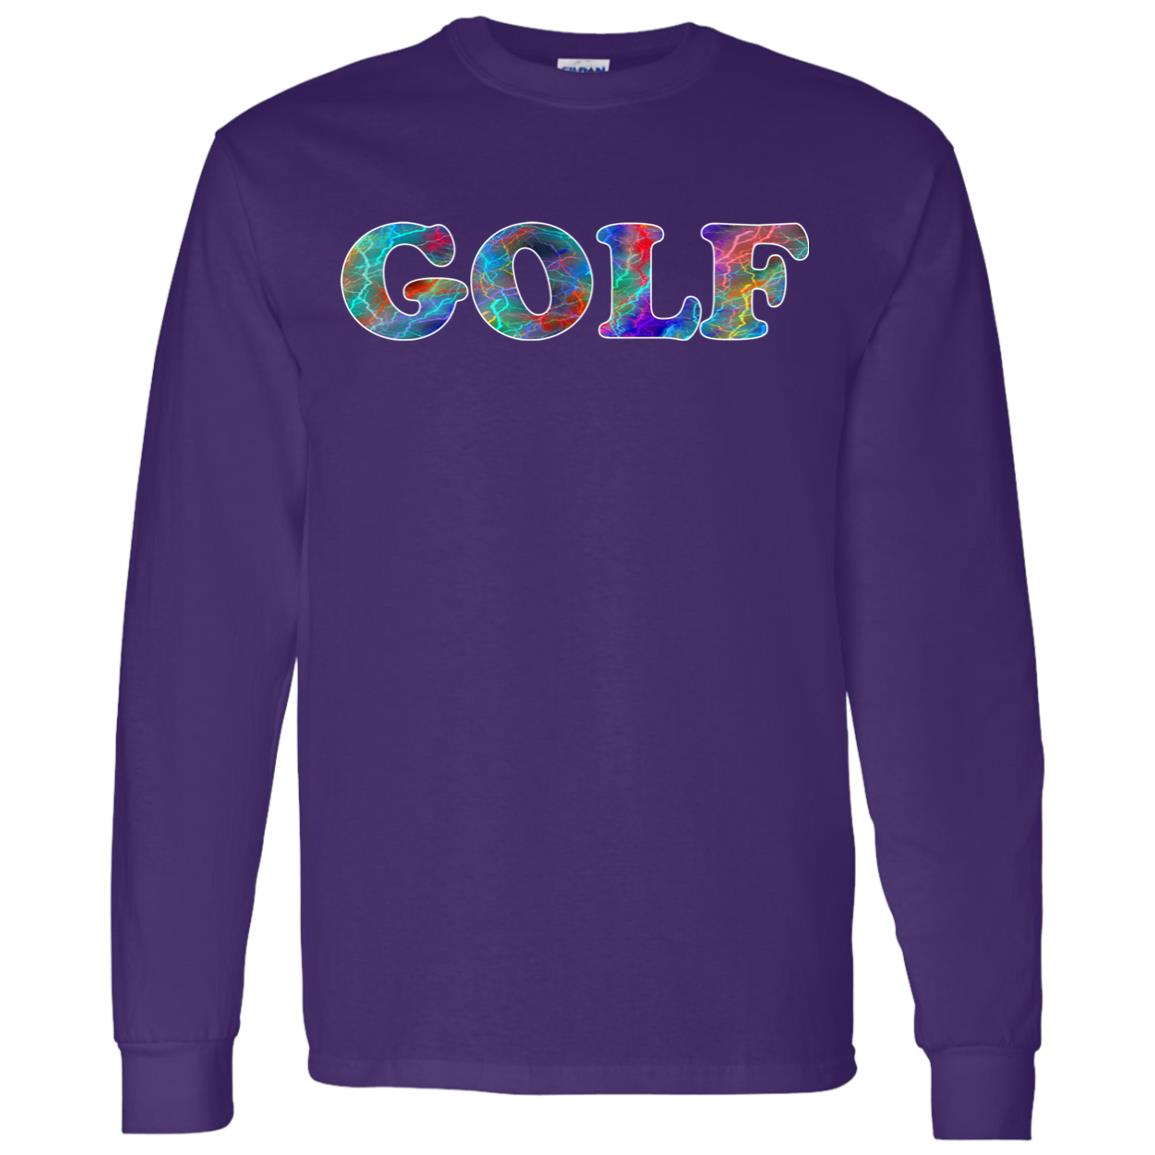 Golf Long Sleeve Sport T-Shirt